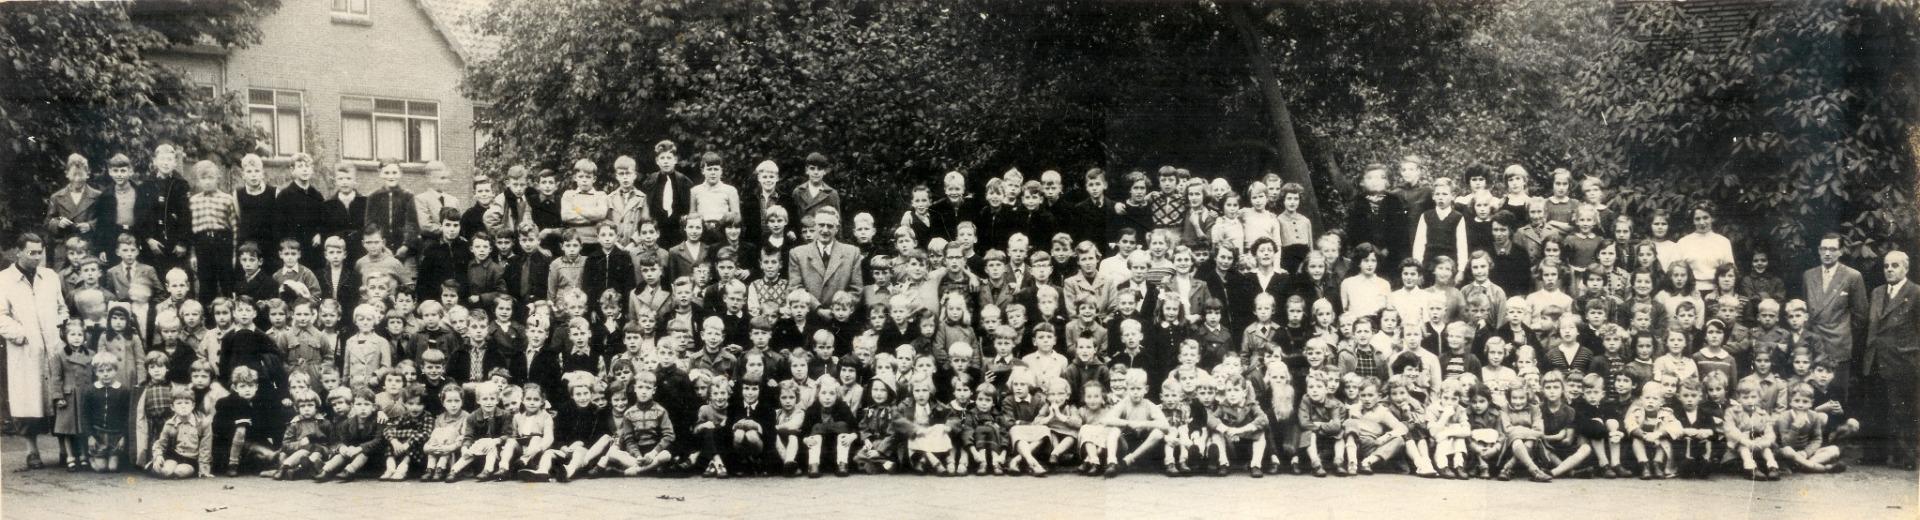 1954 Schoolfoto